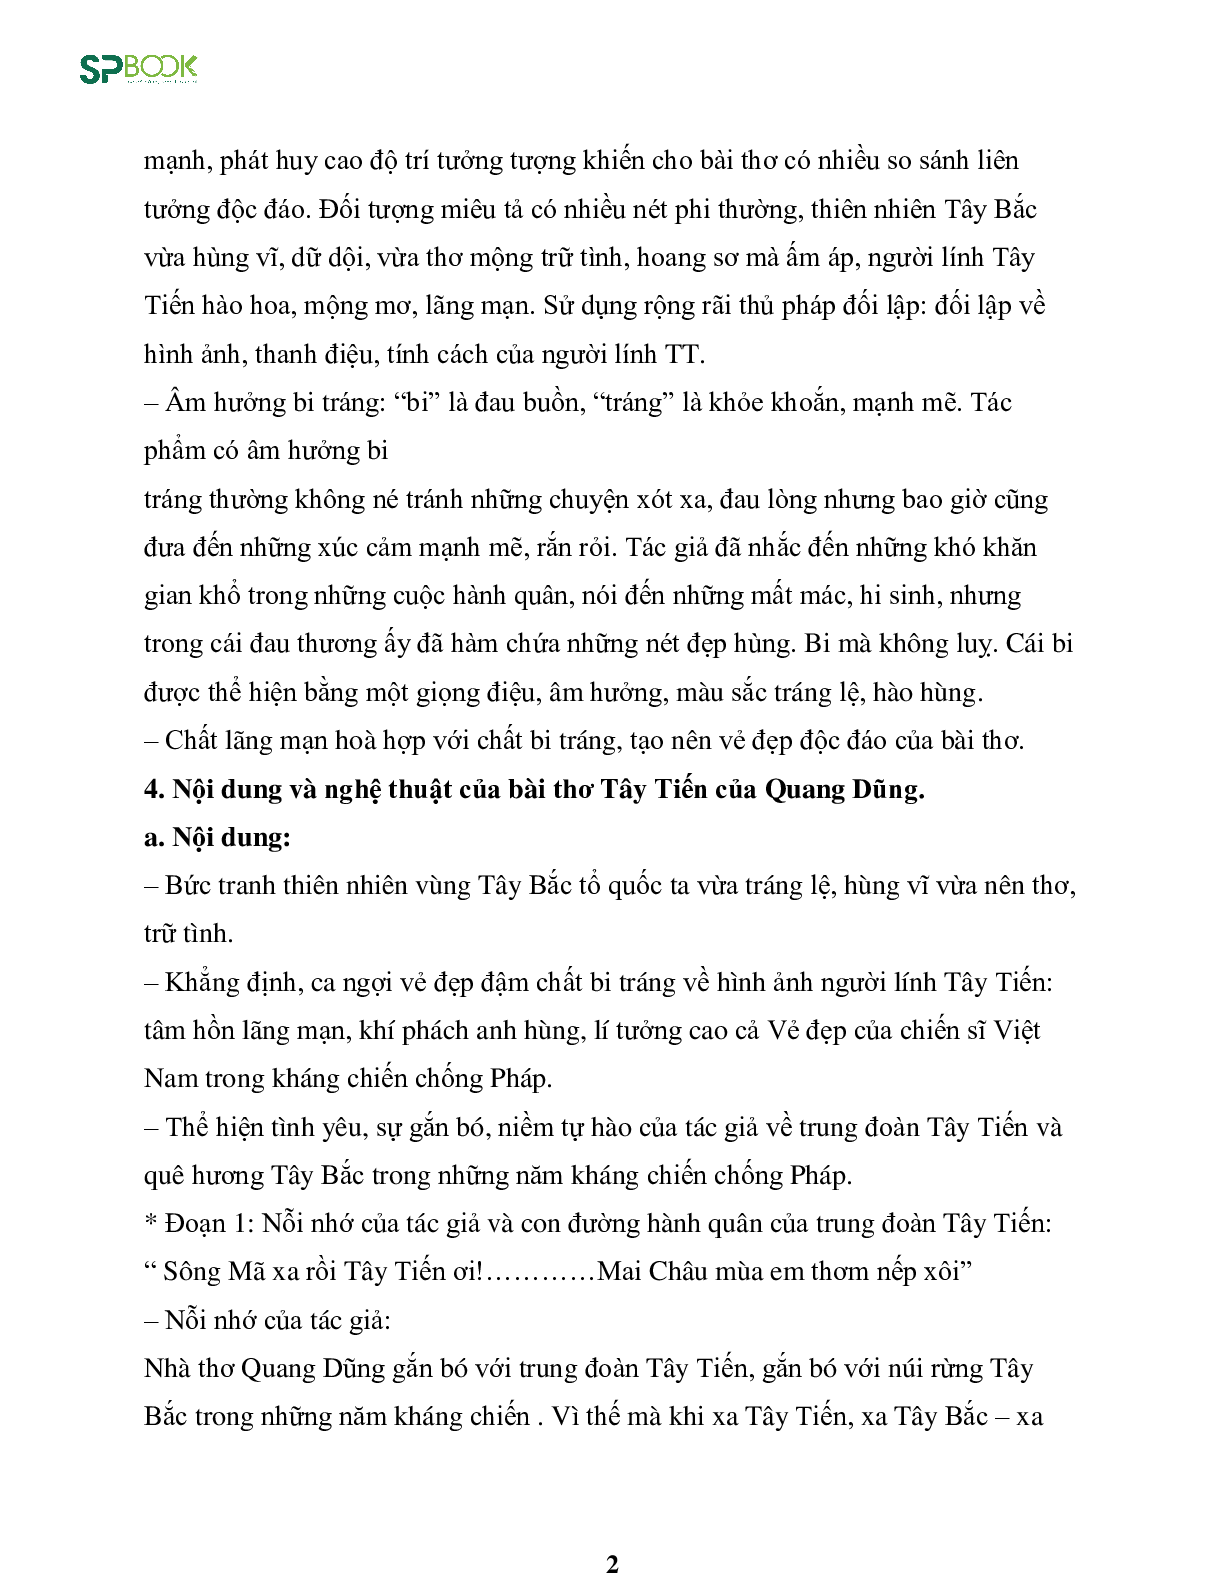 Kiến thức cơ bản và những dạng đề thi về bài Tây Tiến - Quang Dũng môn Văn lớp 12 (trang 2)